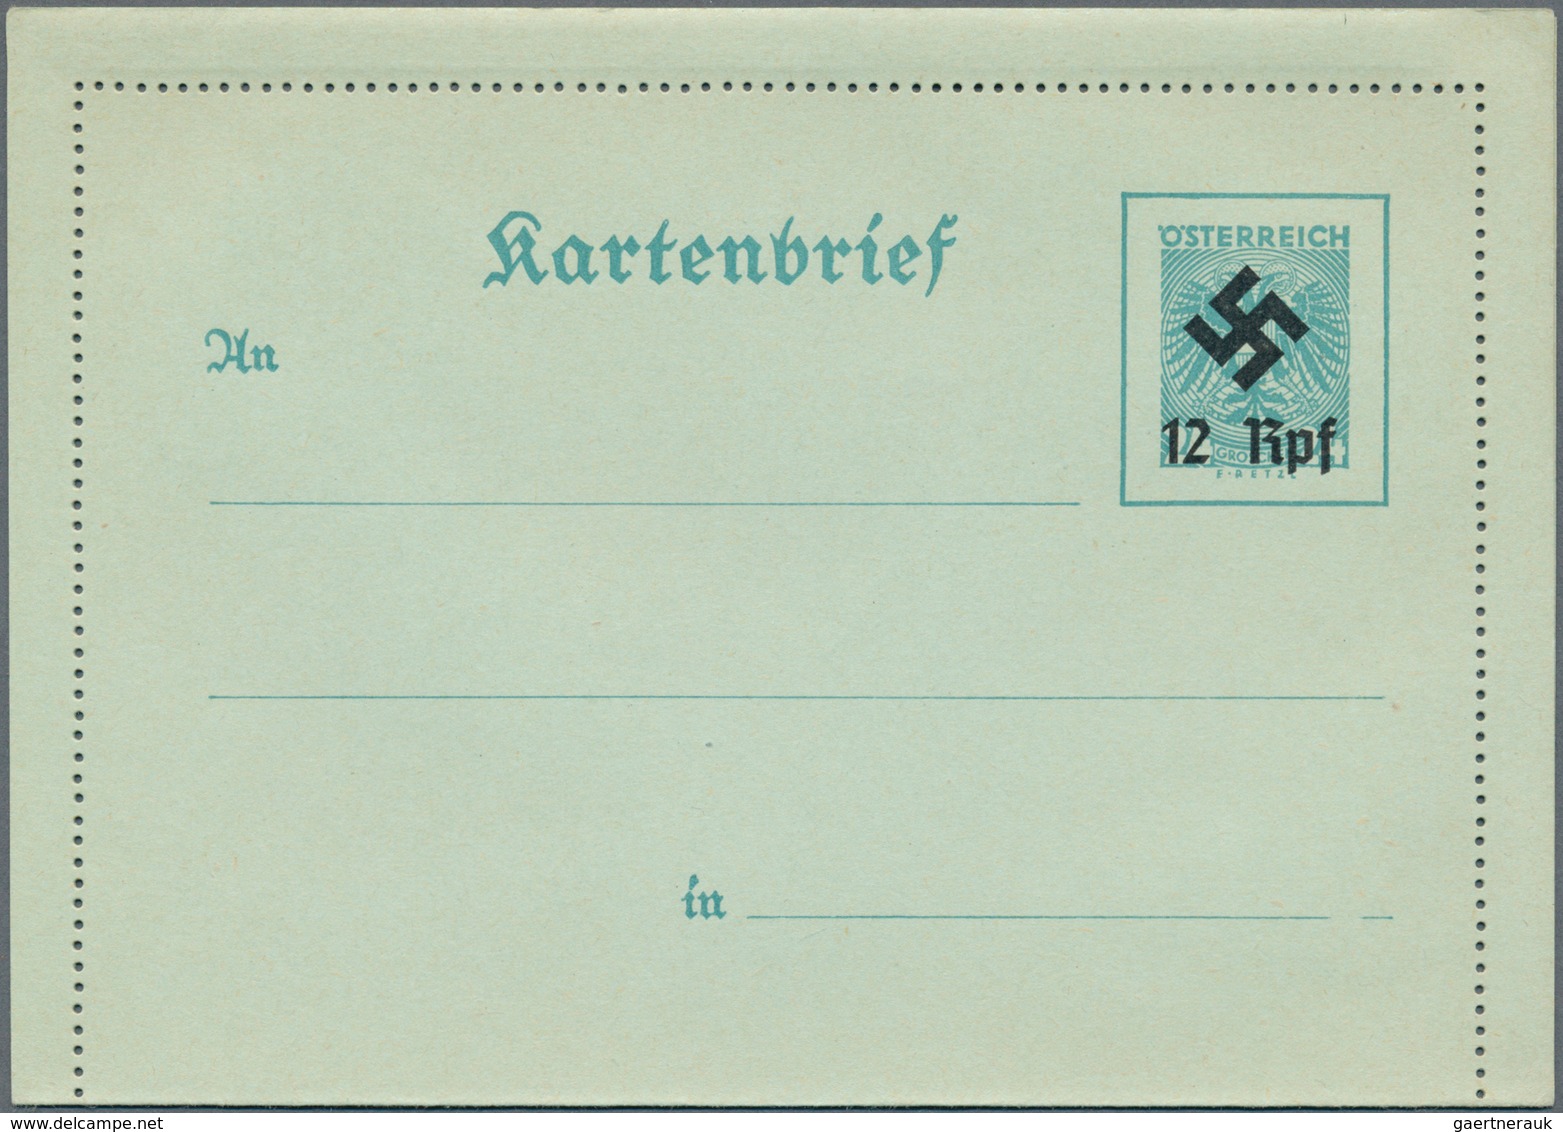 Österreich - Ganzsachen: 1886/1949, Slg. mit ca.150 Ganzsachen-Kartenbriefen ab der Kreuzerzeit bis